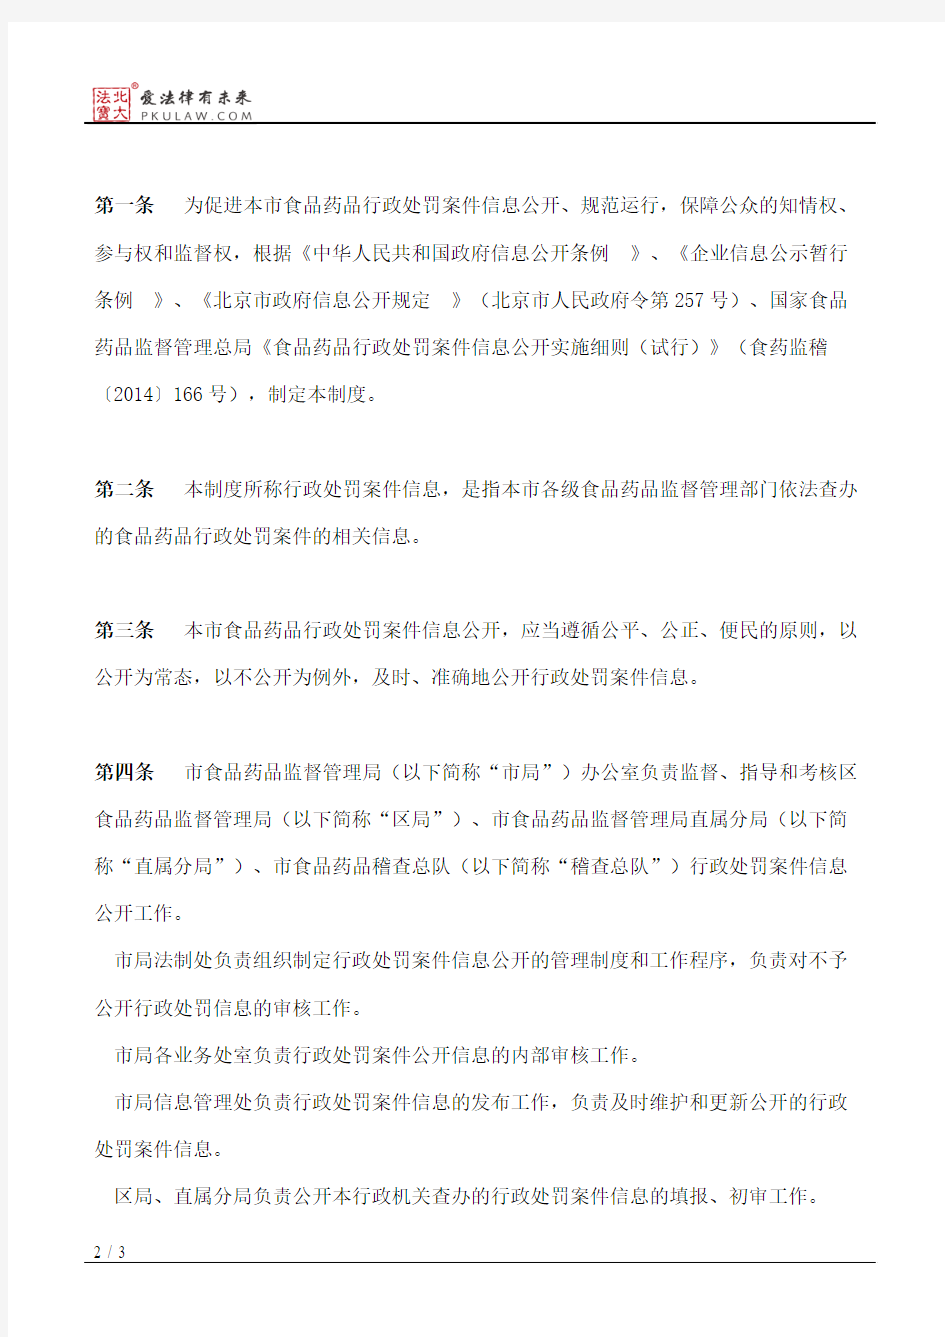 北京市食品药品监督管理局关于印发《北京市食品药品行政处罚案件